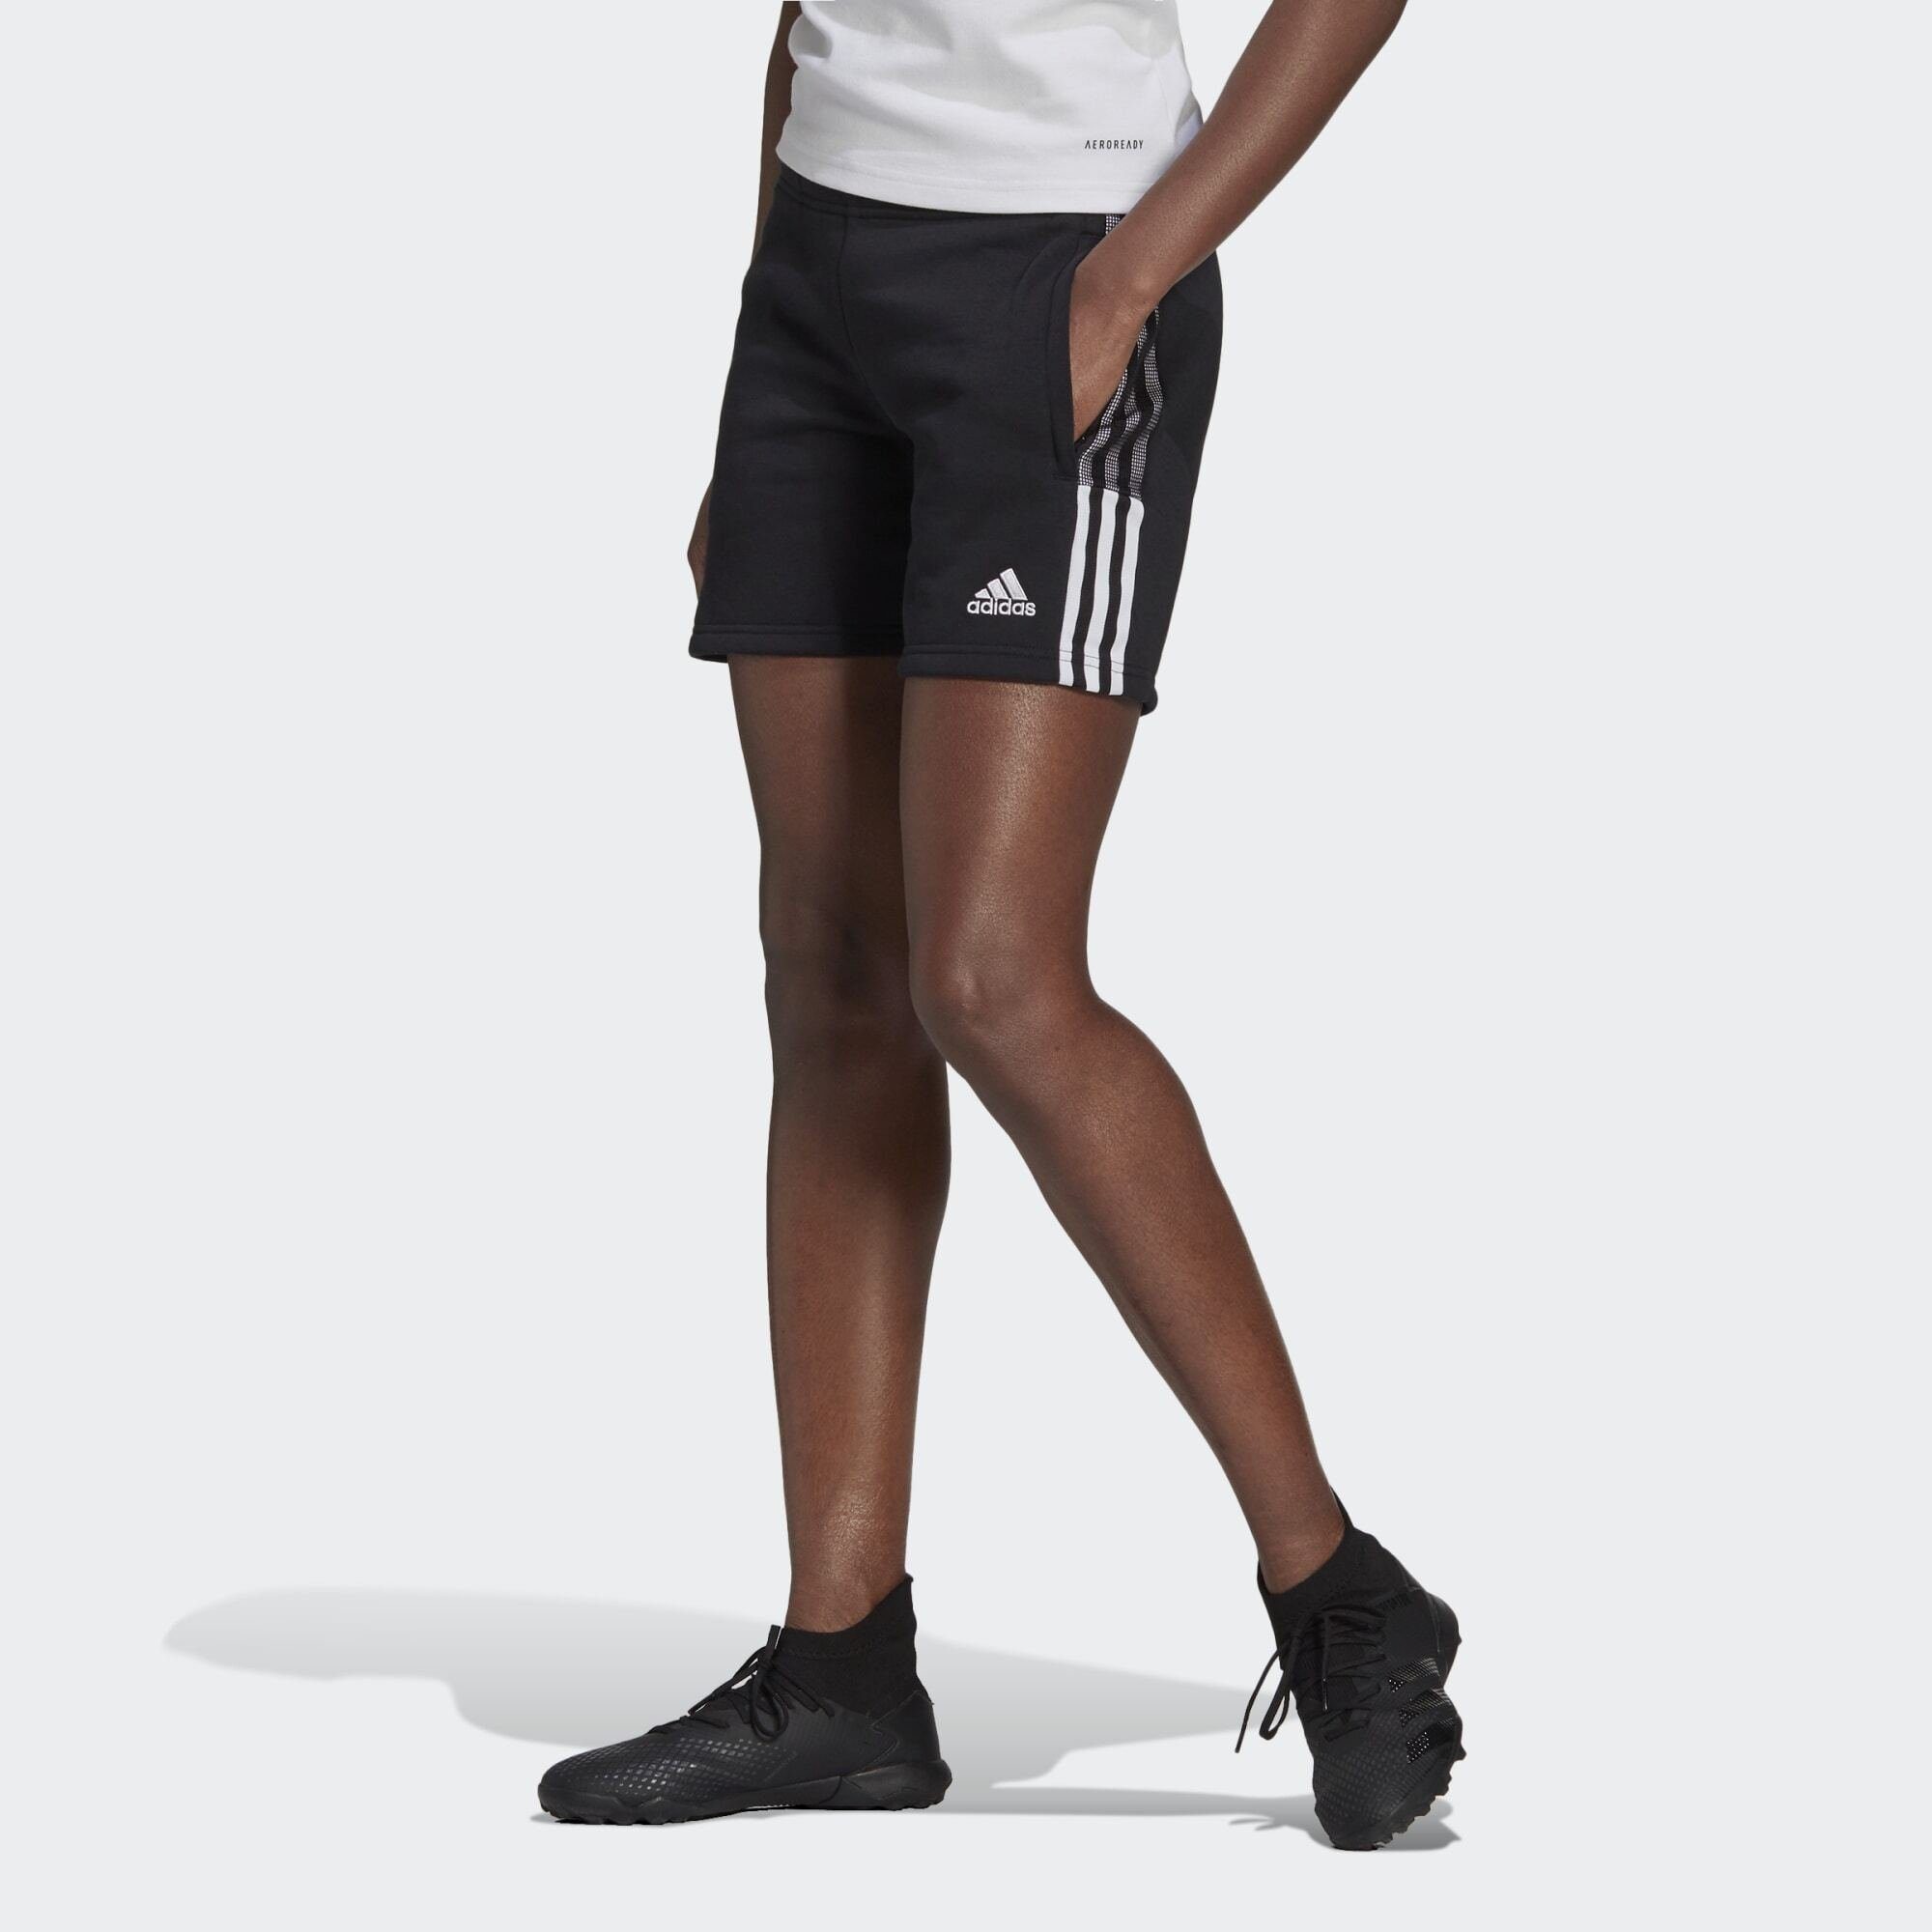 adidas Damen Fußballhose & Fußball Trainingshose kaufen | OTTO